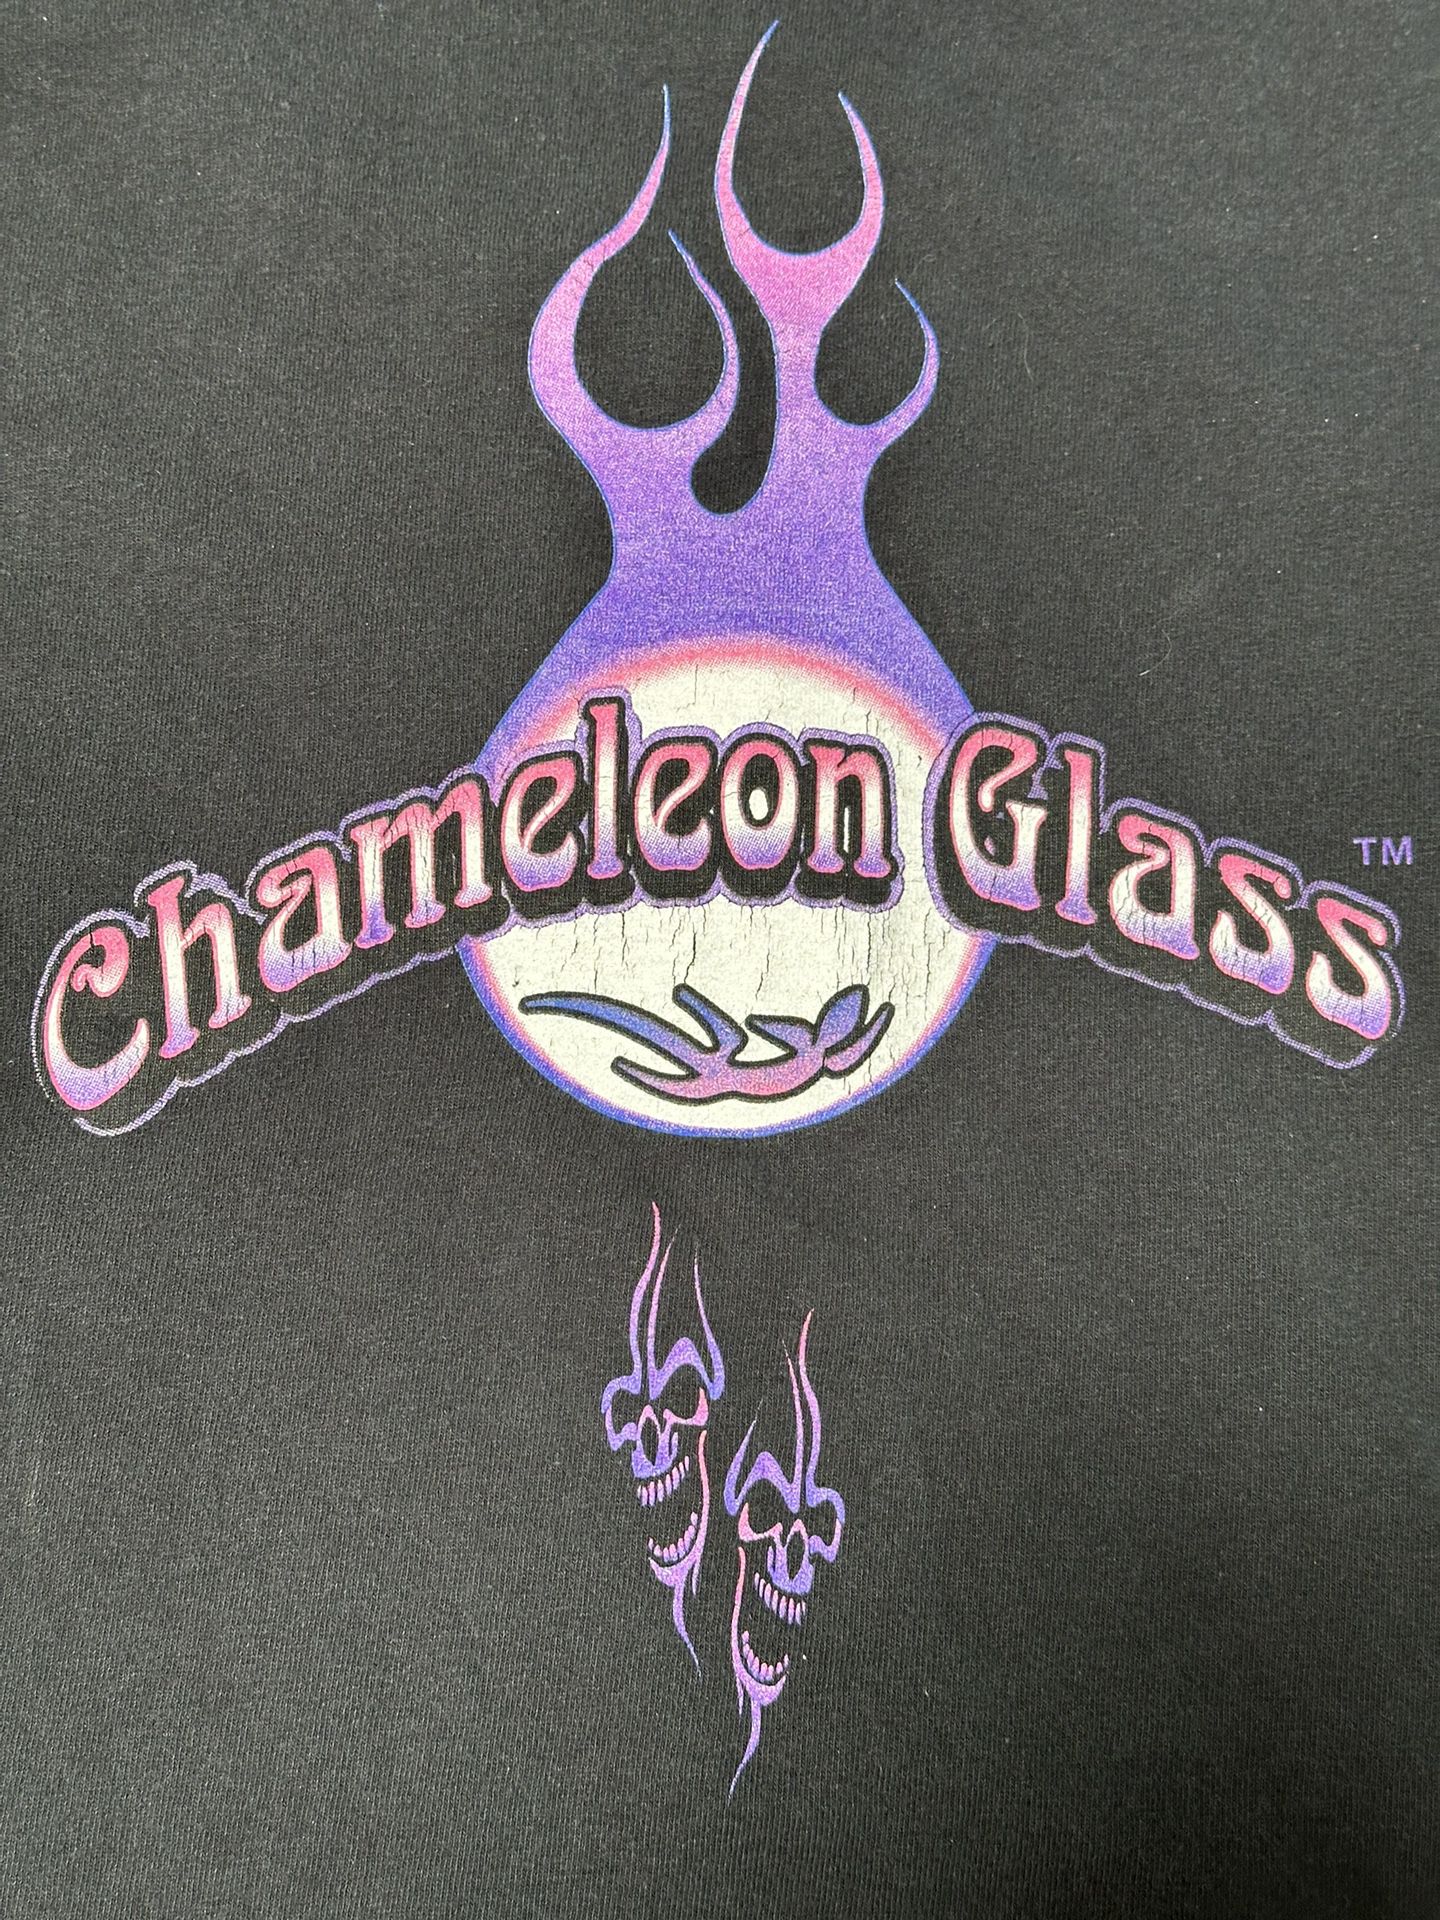 Chameleon Glass T-shirt